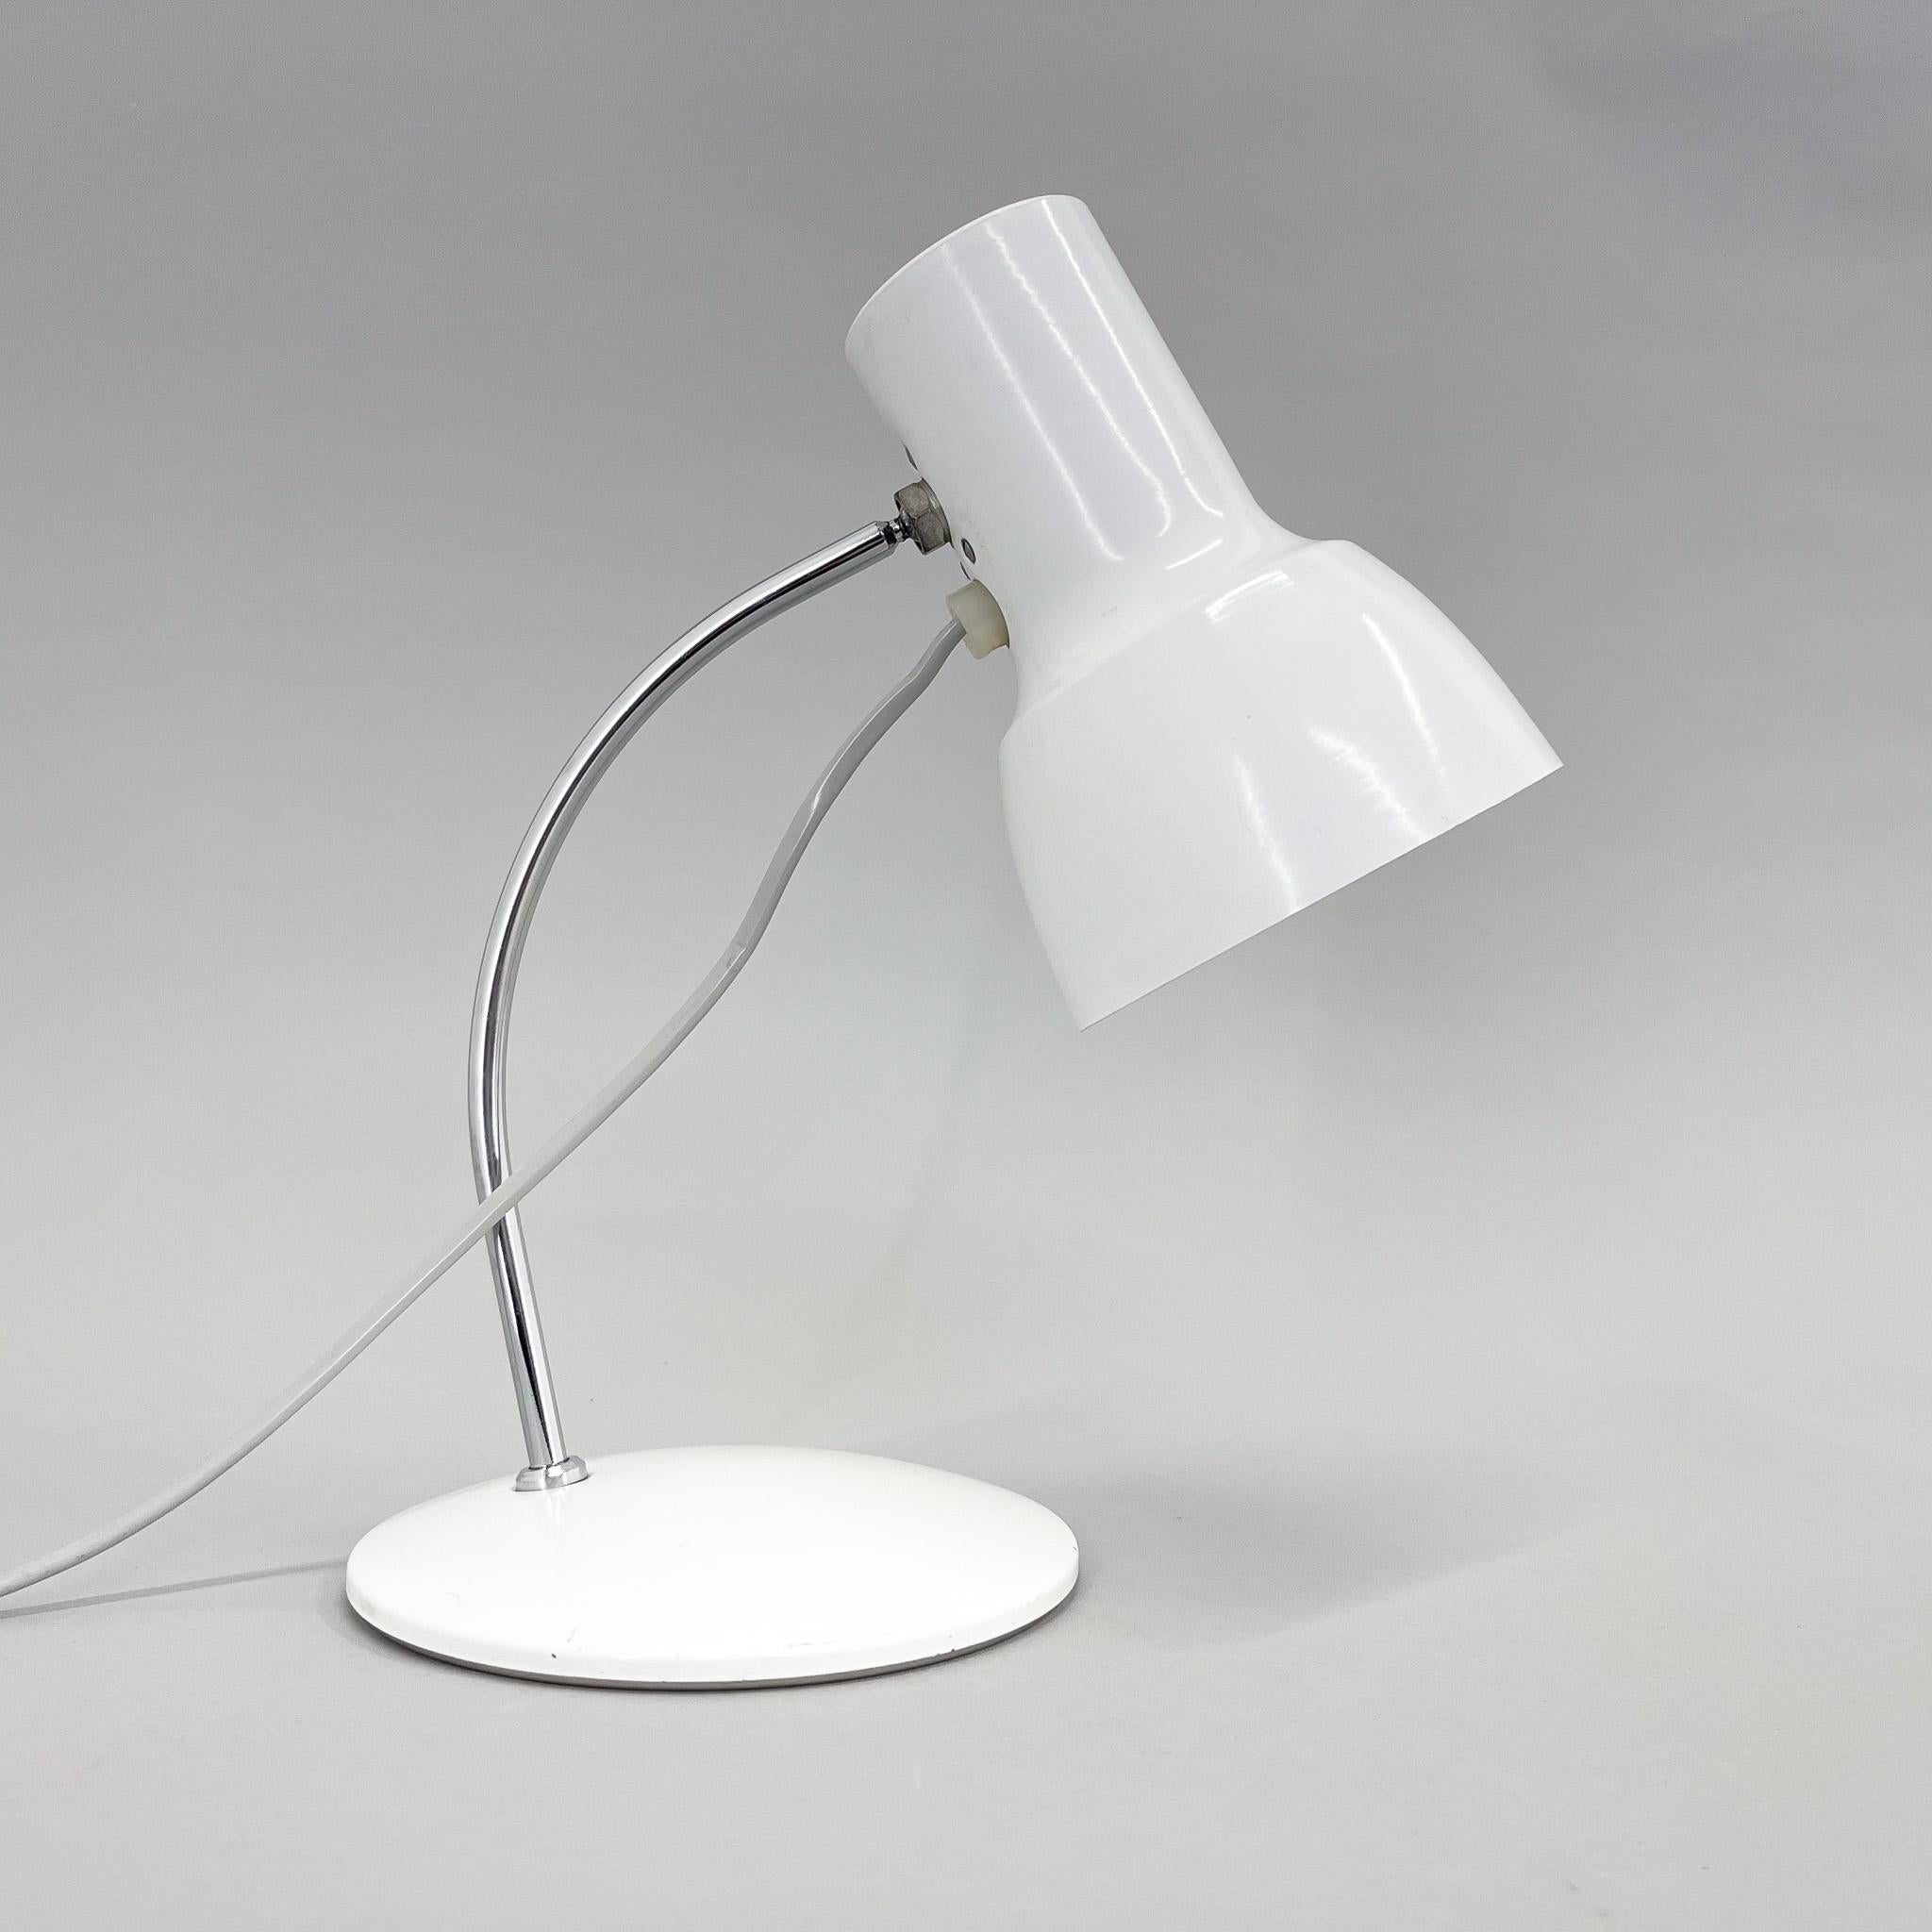 Petite lampe de table vintage blanche avec abat-jour réglable. Ampoules : 1x 1 E14. Adaptateur de prise US inclus.